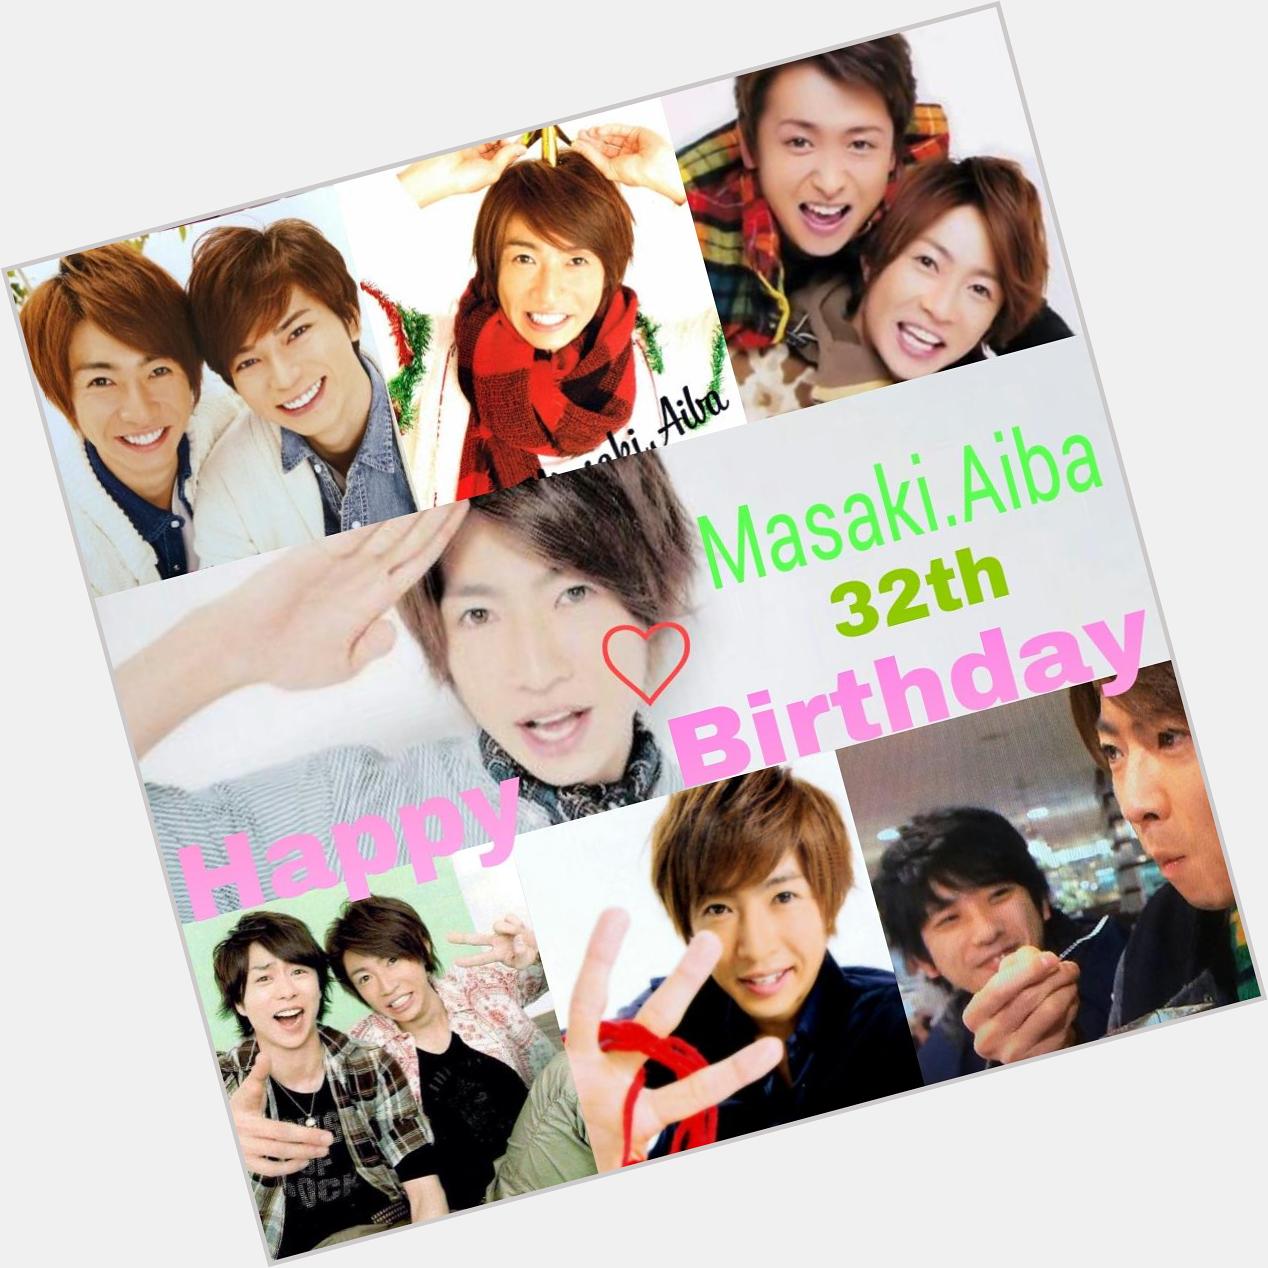 Masaki.Aiba   Happy Birthday  